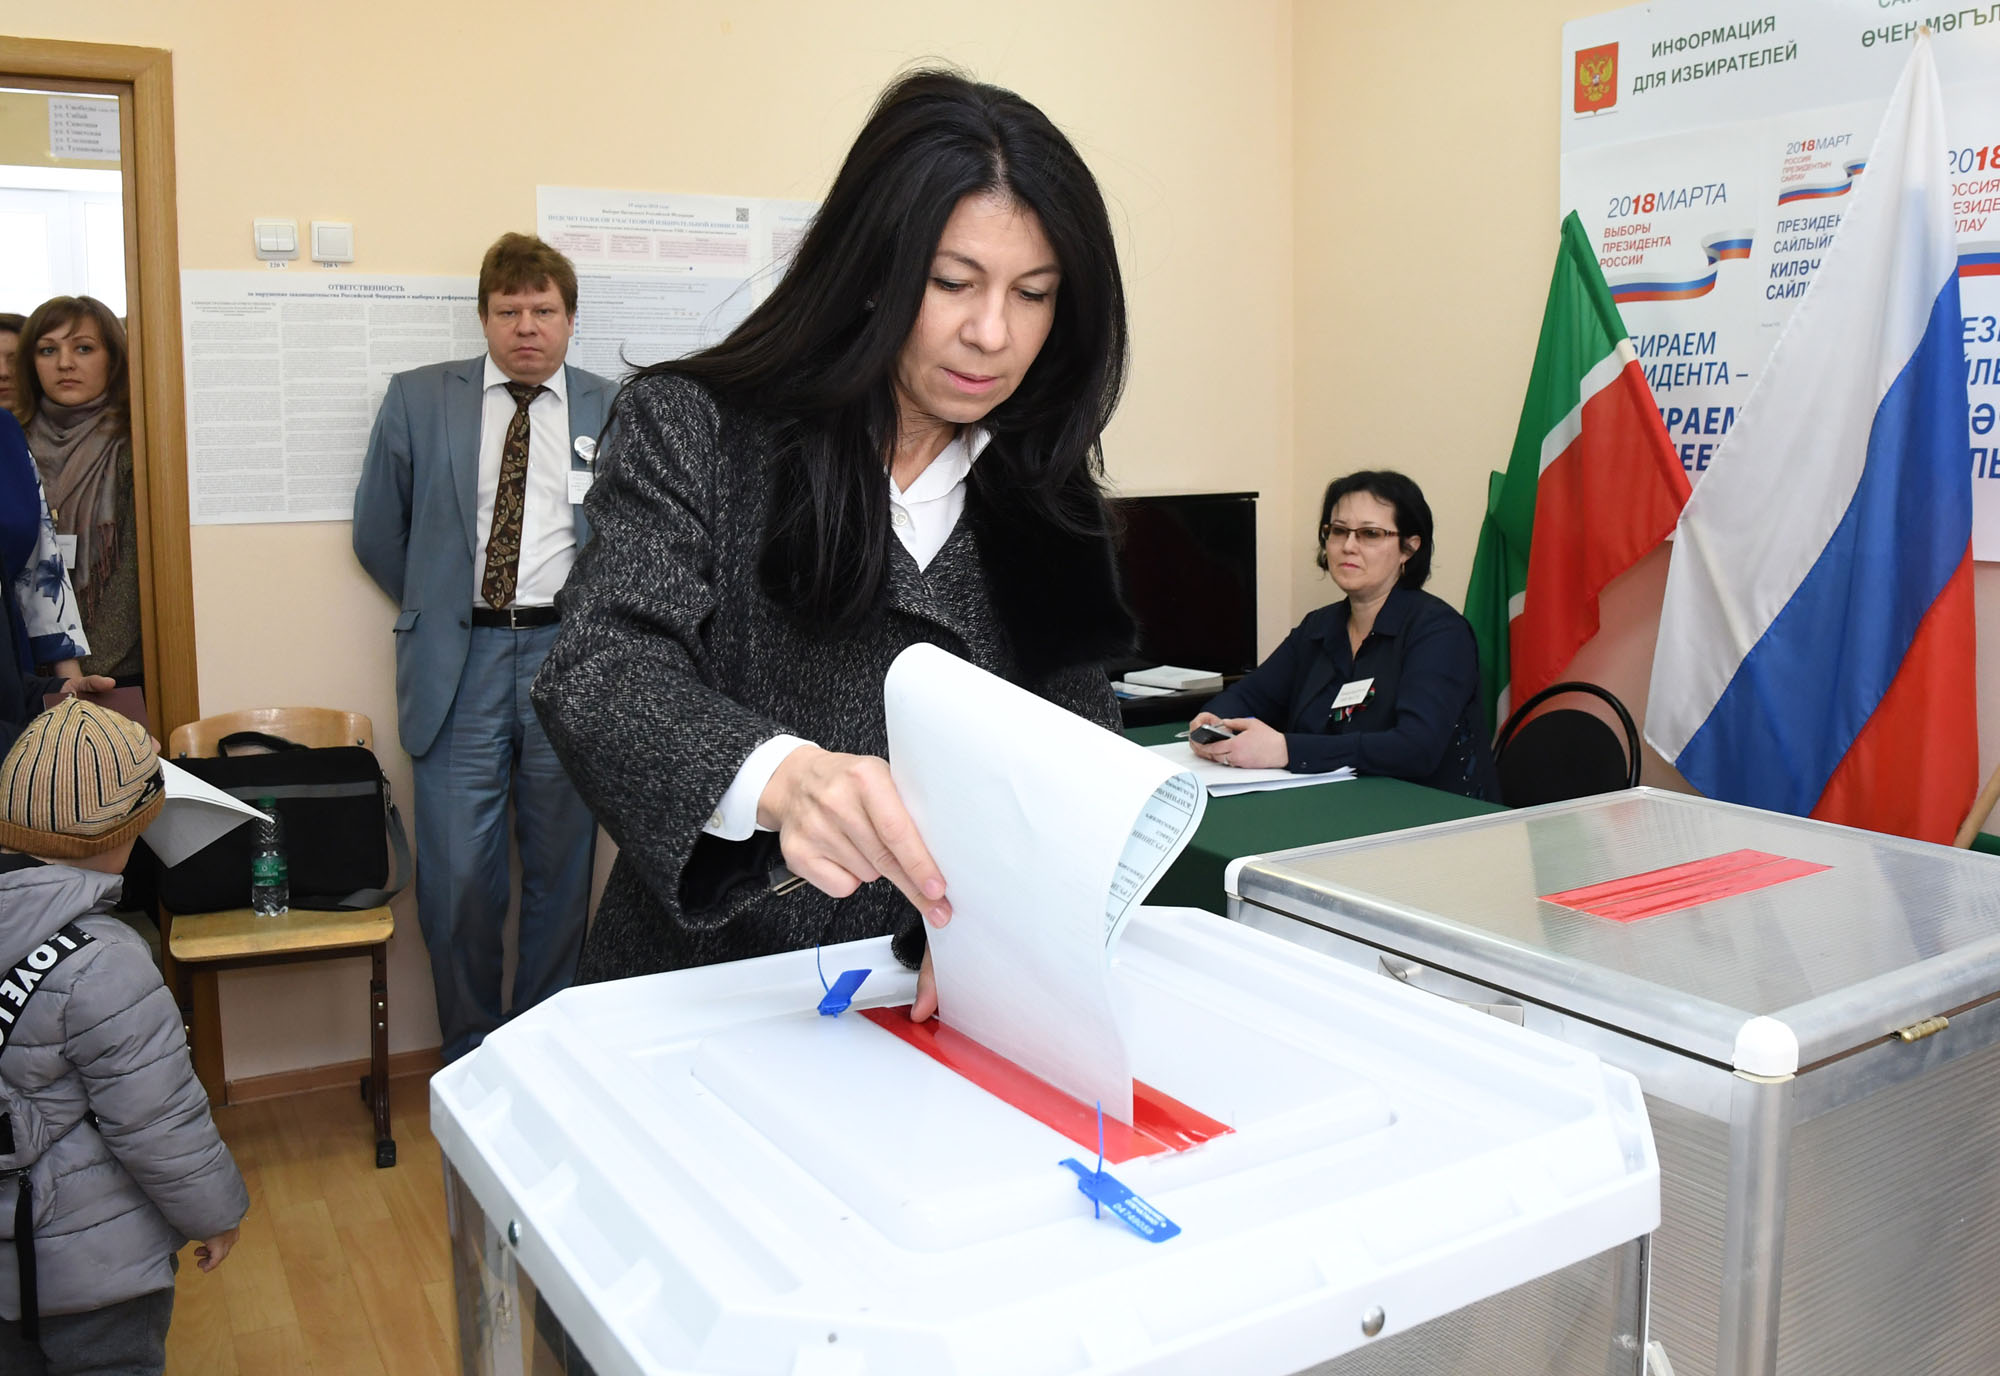 Выборы президента рф в казахстане